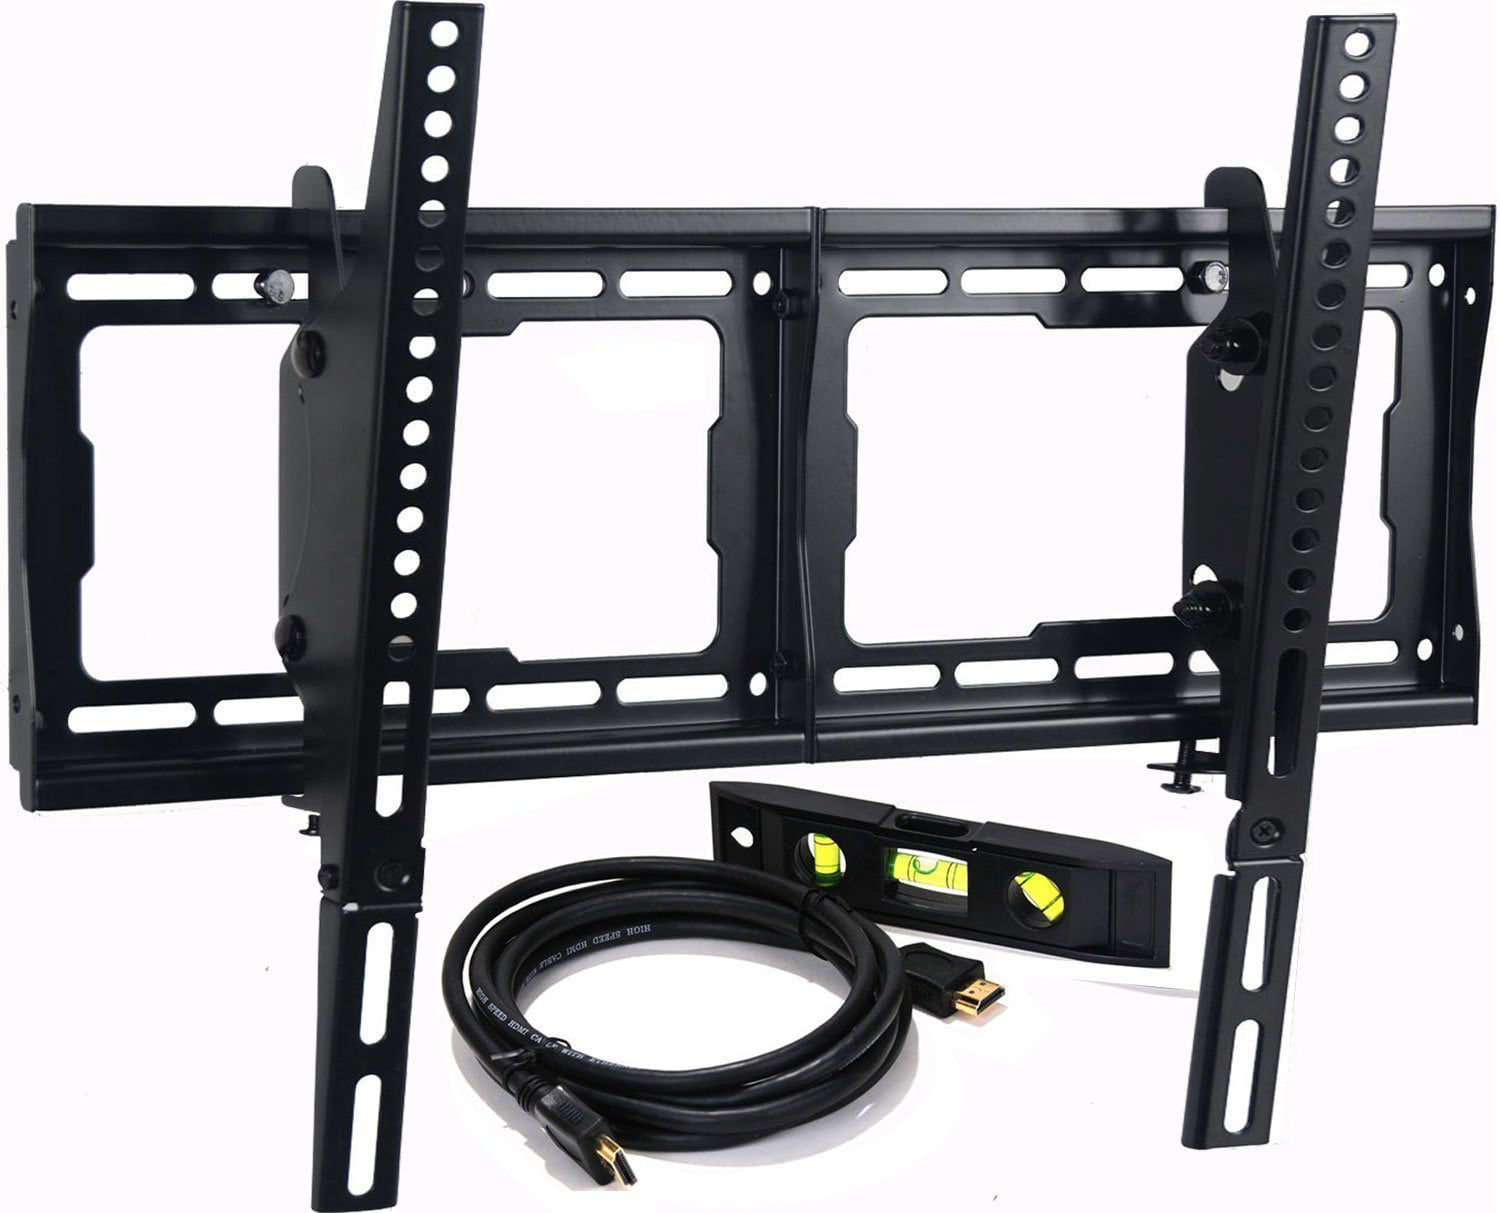 Black Tilting Wall Mount Bracket for Sony KDL-32S3000 LCD 32 inch HDTV TV 